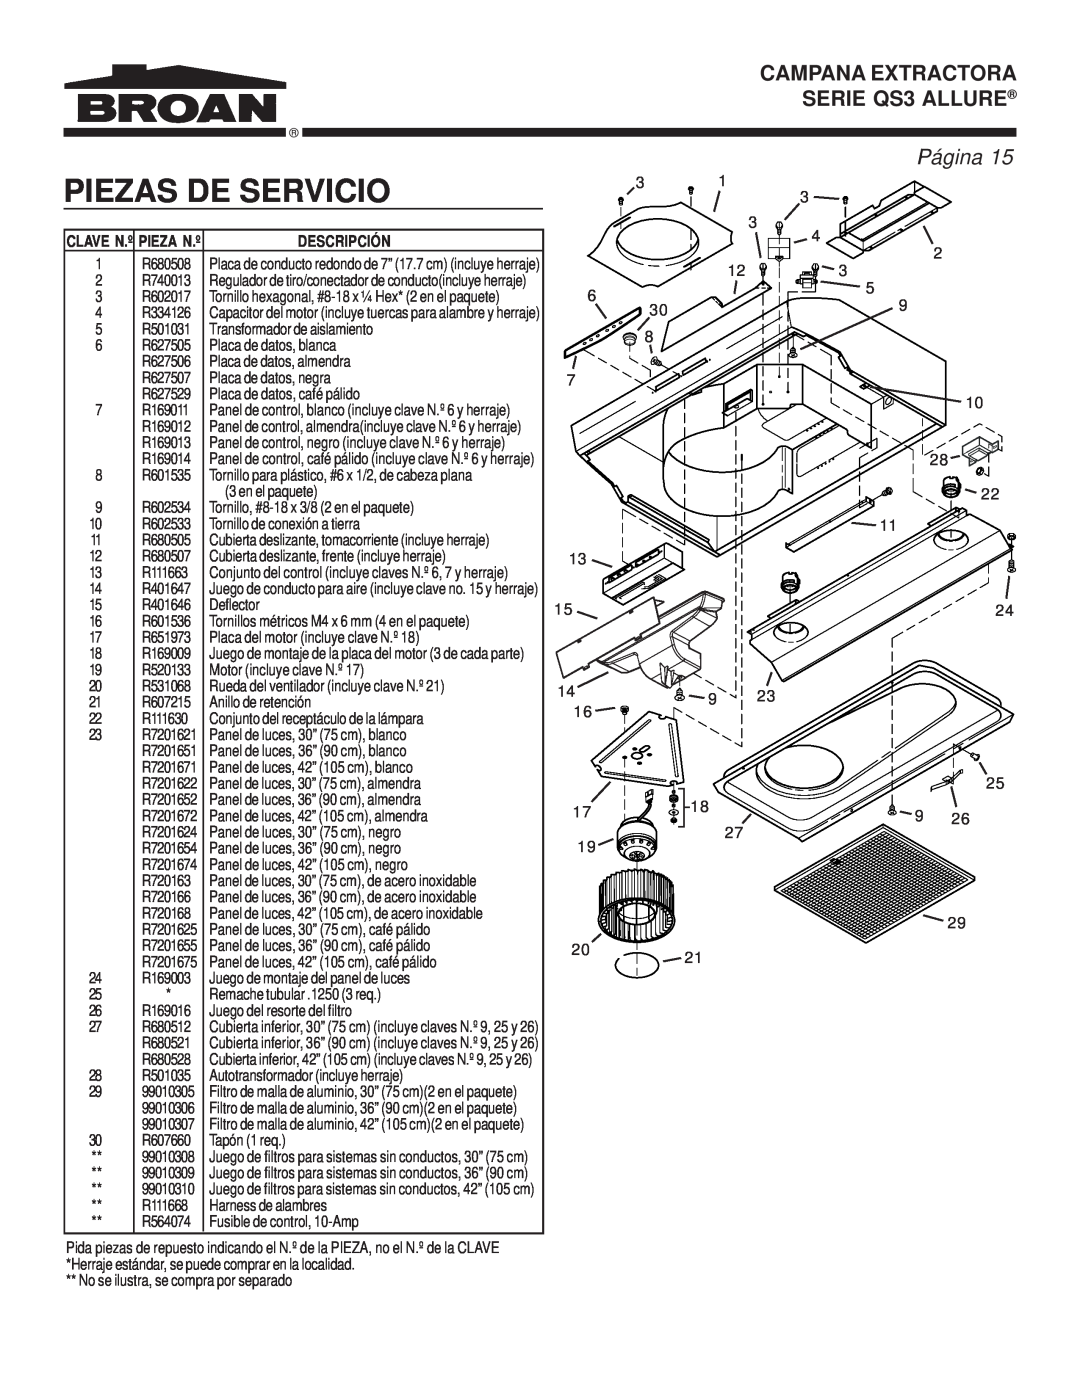 Broan warranty Piezas De Servicio, CAMPANA EXTRACTORA SERIE QS3 ALLURE, Página, Clave N.º Pieza N.º 